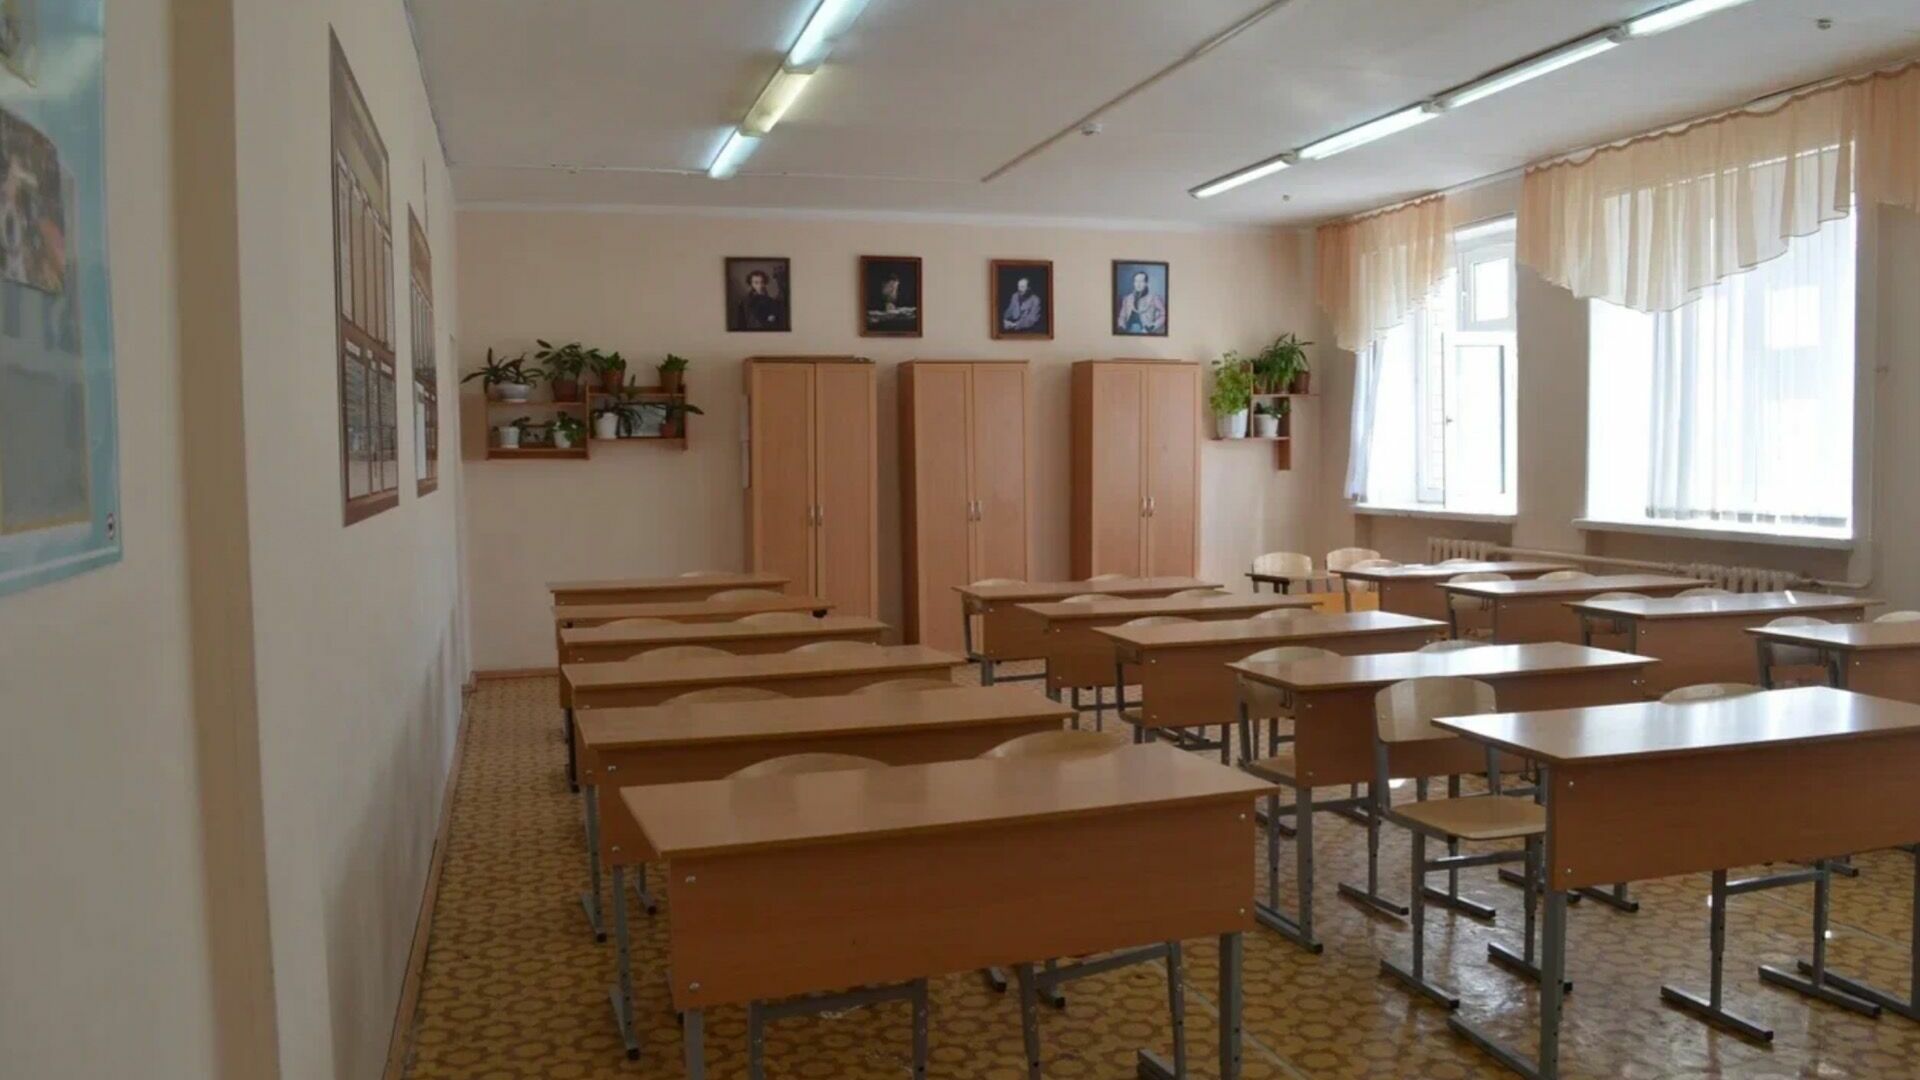 Ремонт почти 300 образовательных учреждений в Татарстане обойдется в 7,8 млрд рублей